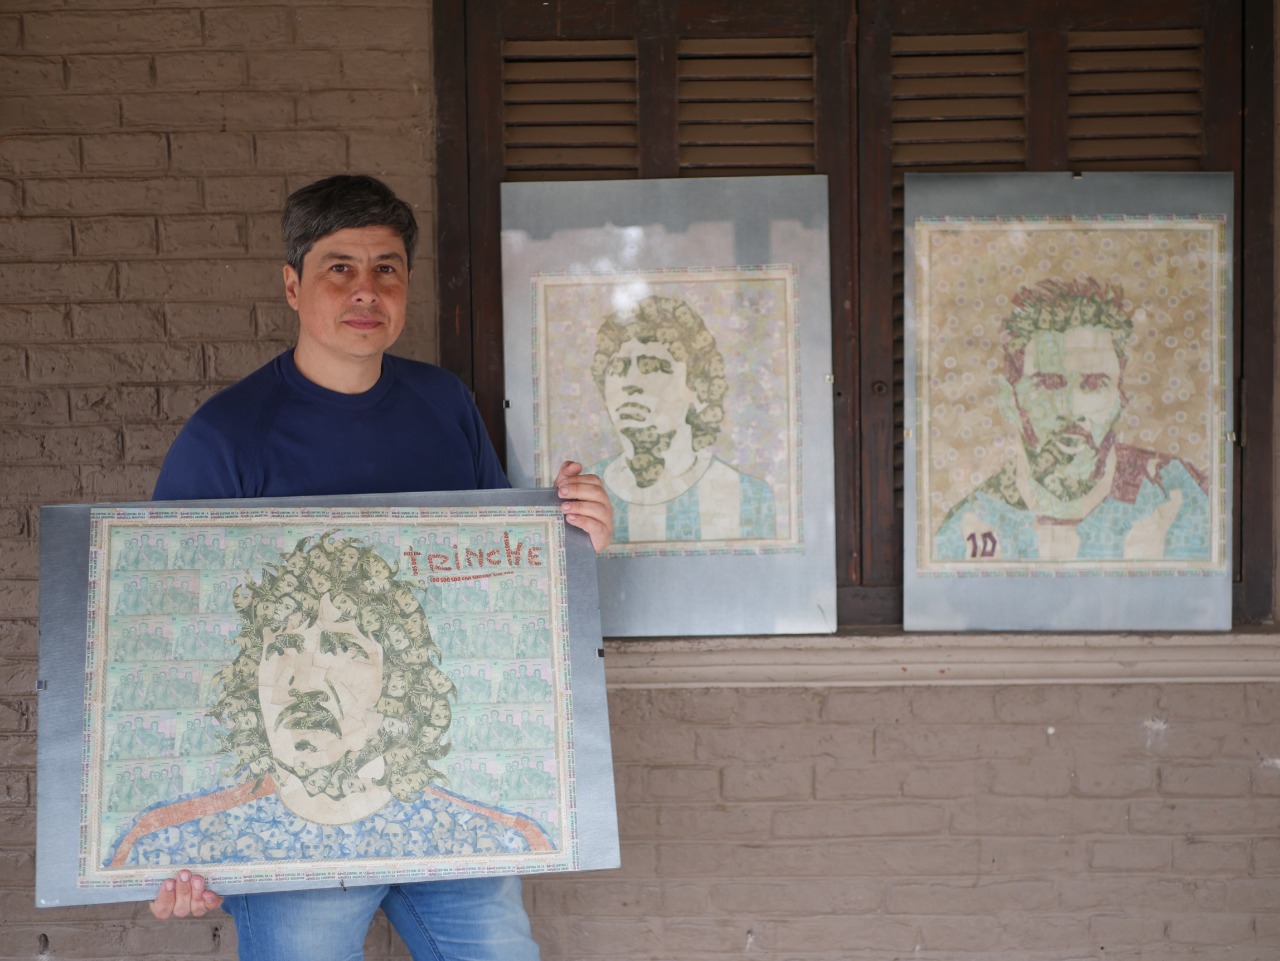 Emiliano Sacco, el artista que hizo retratos de Messi, Maradona y el Trinche con billetes de 2 y 5 pesos